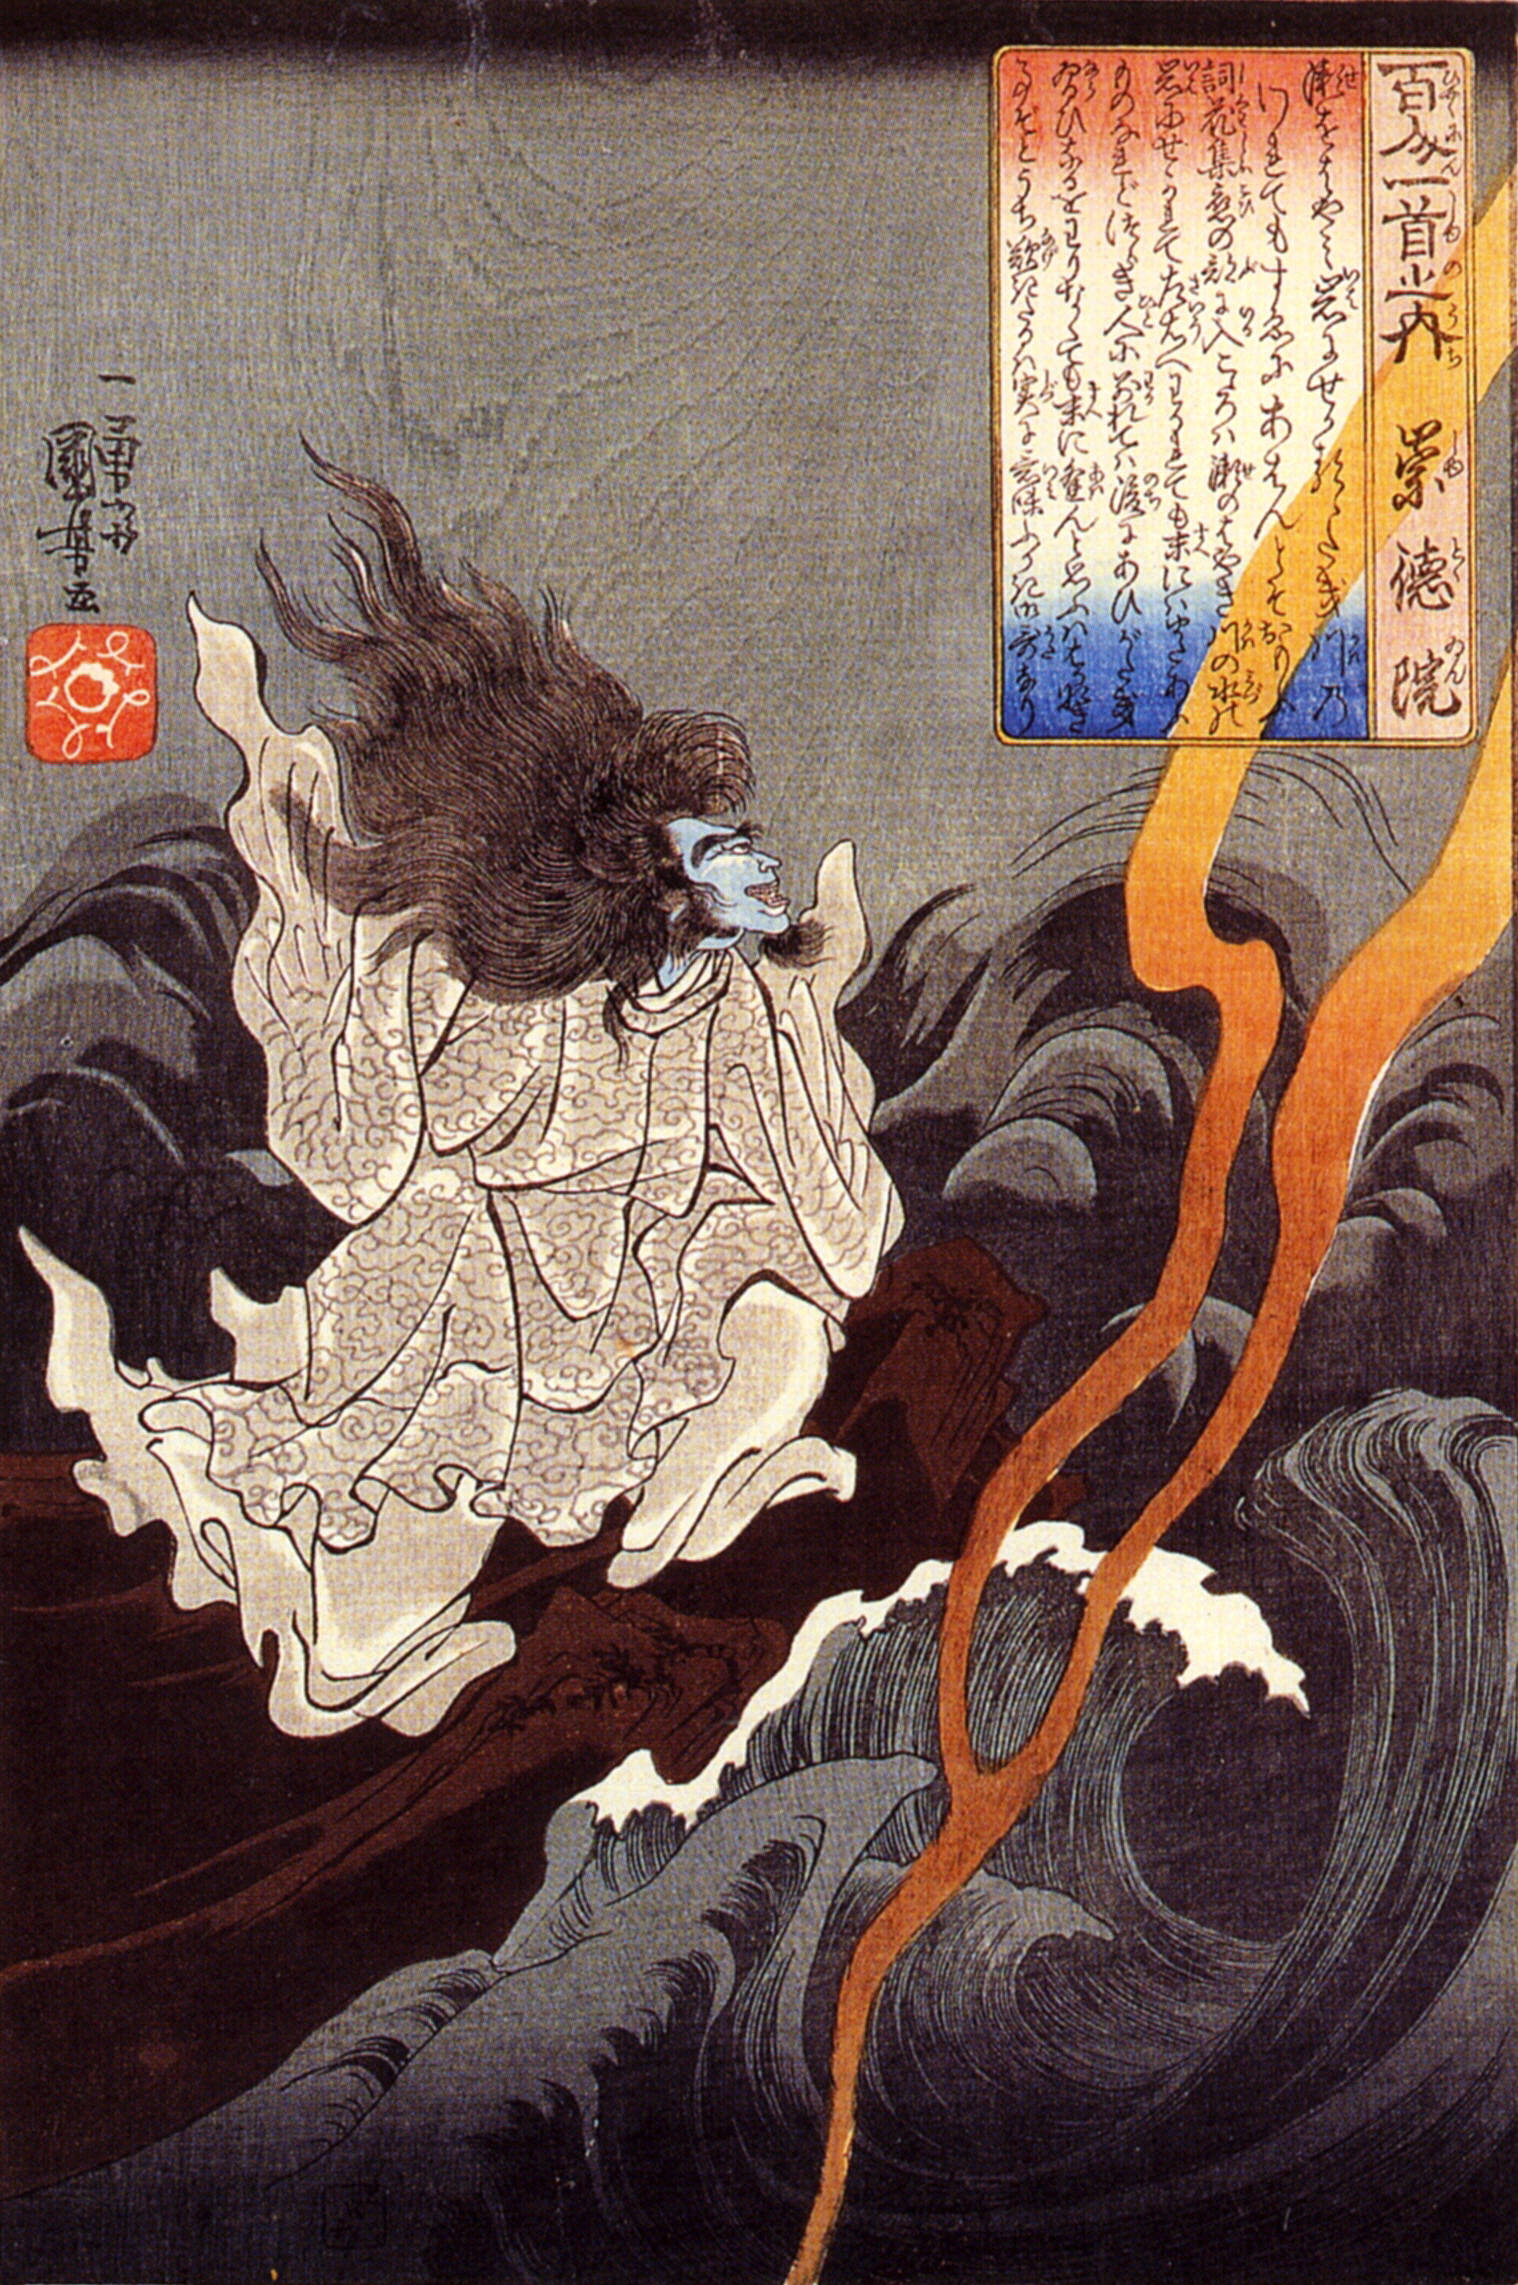 Demon emperor Sutoku summoning a storm